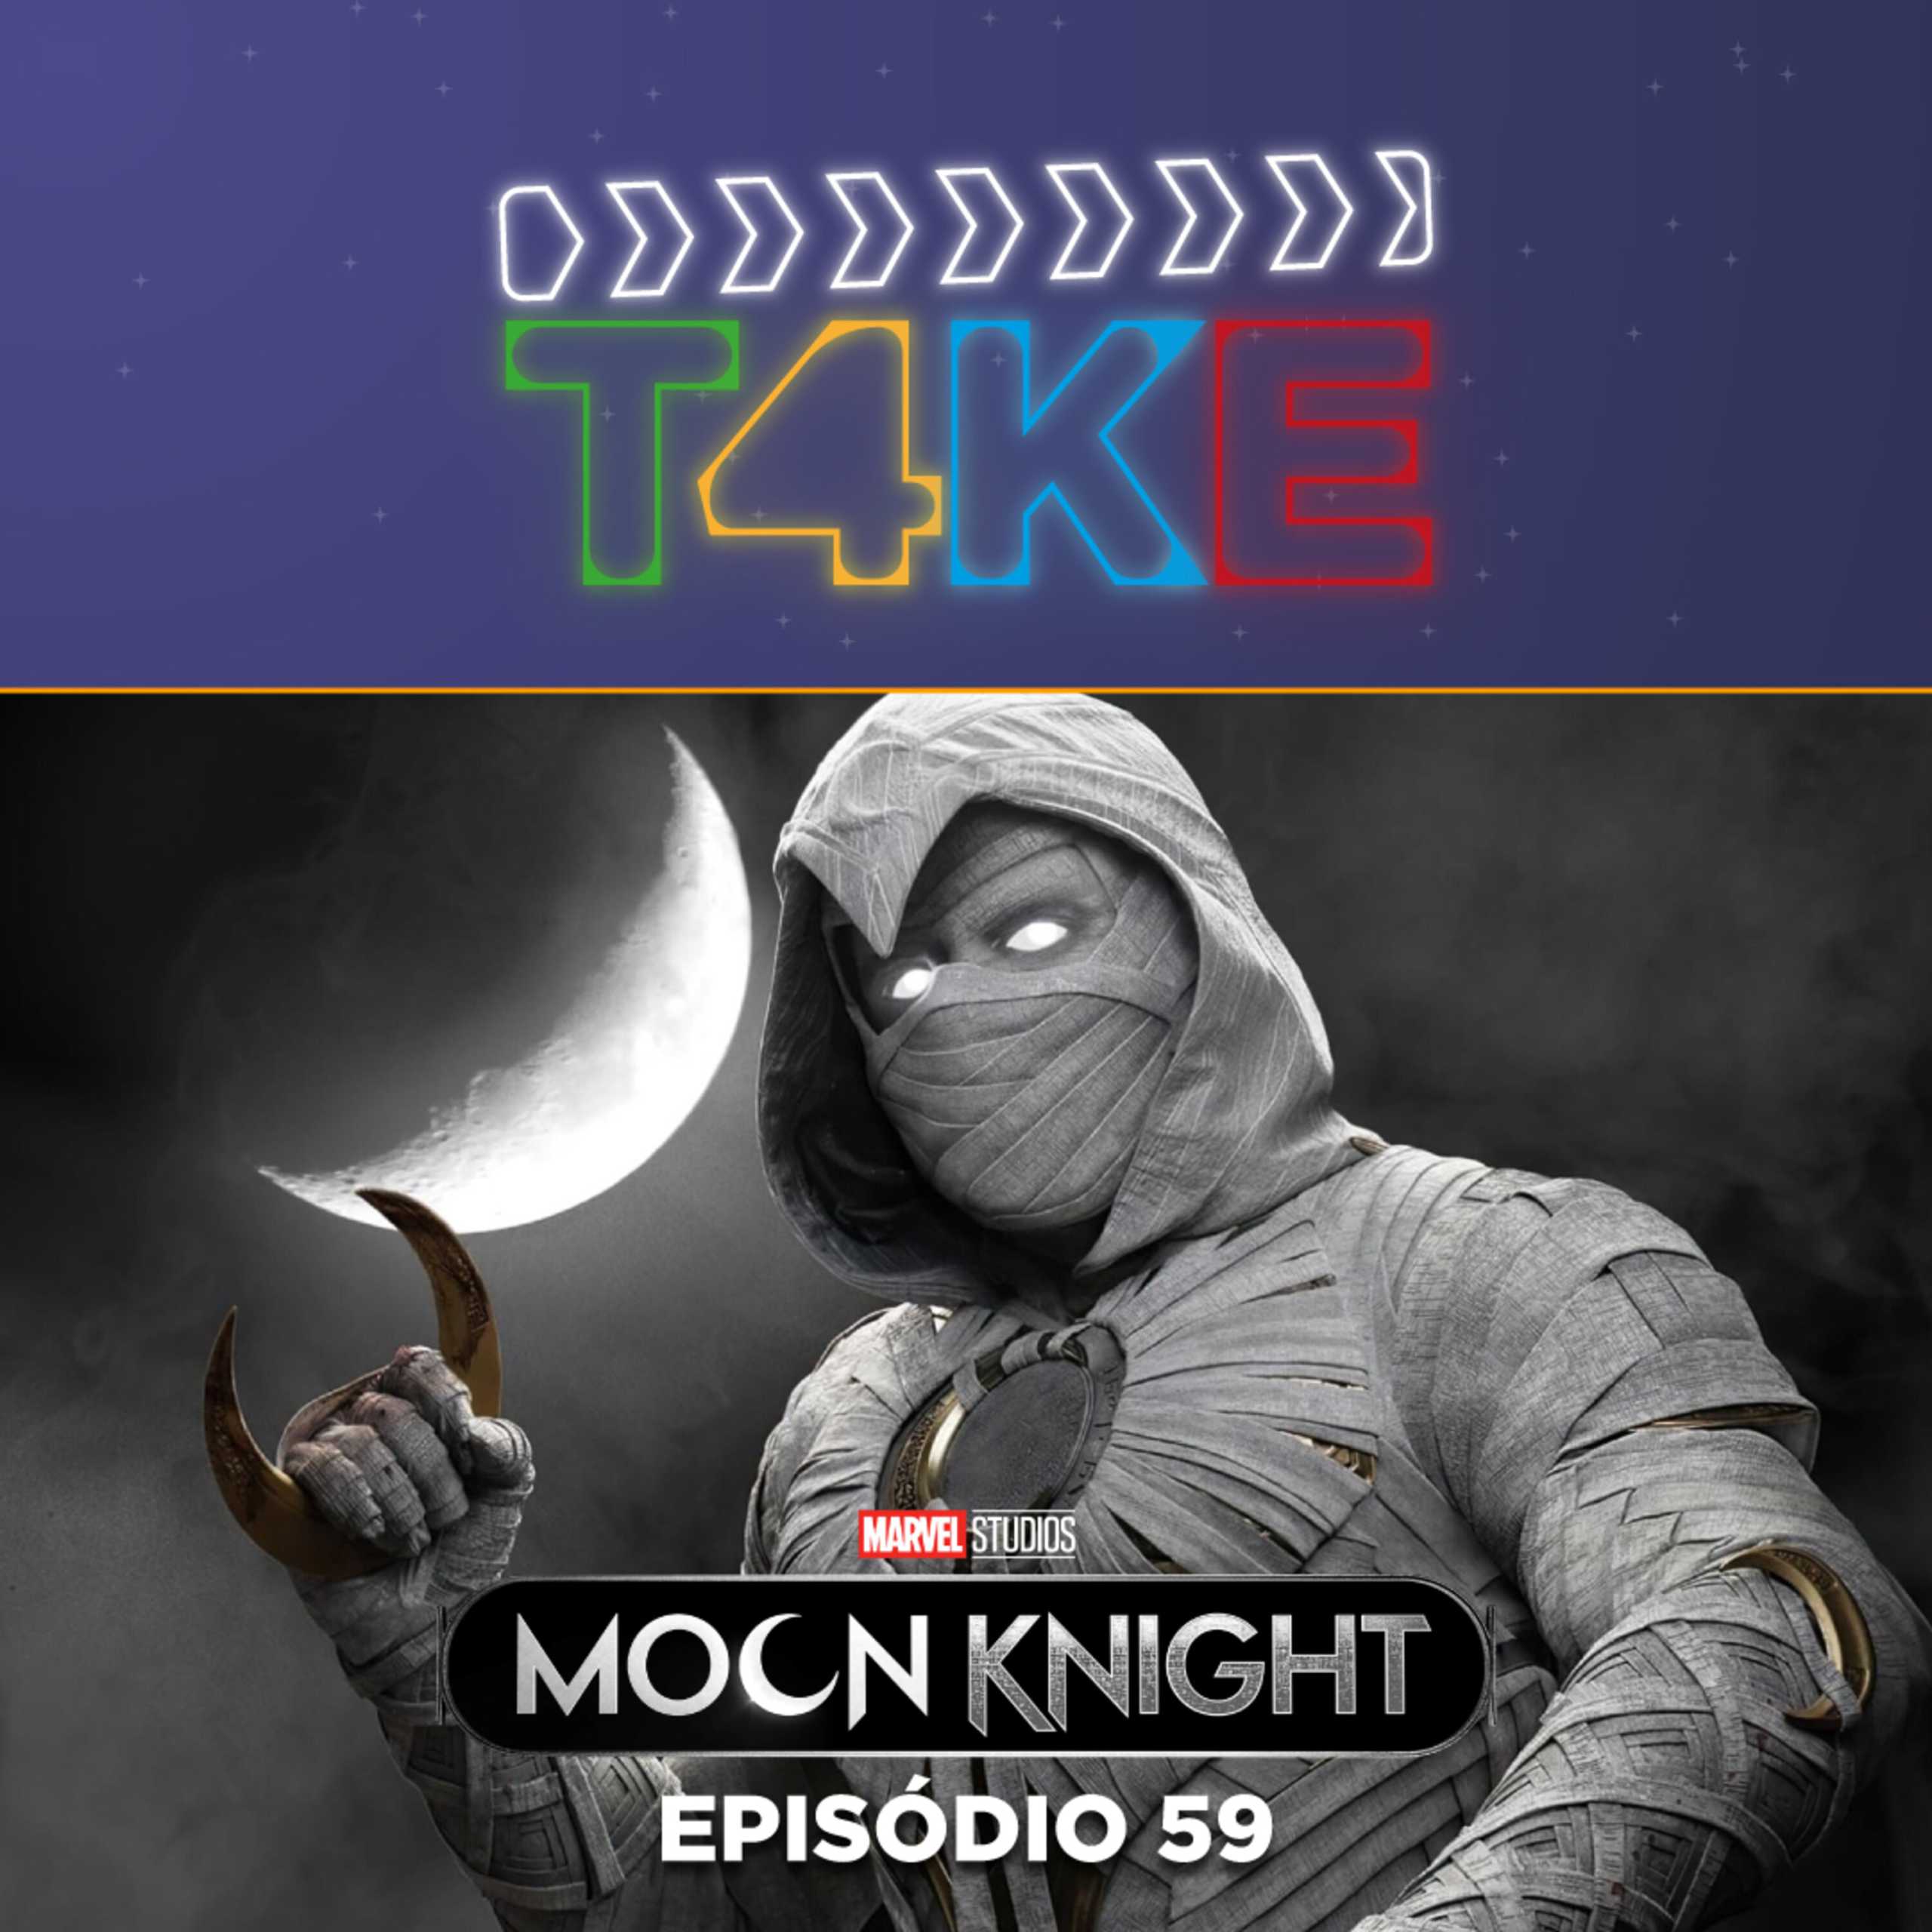 Moon Knight, primeira temporada em análise